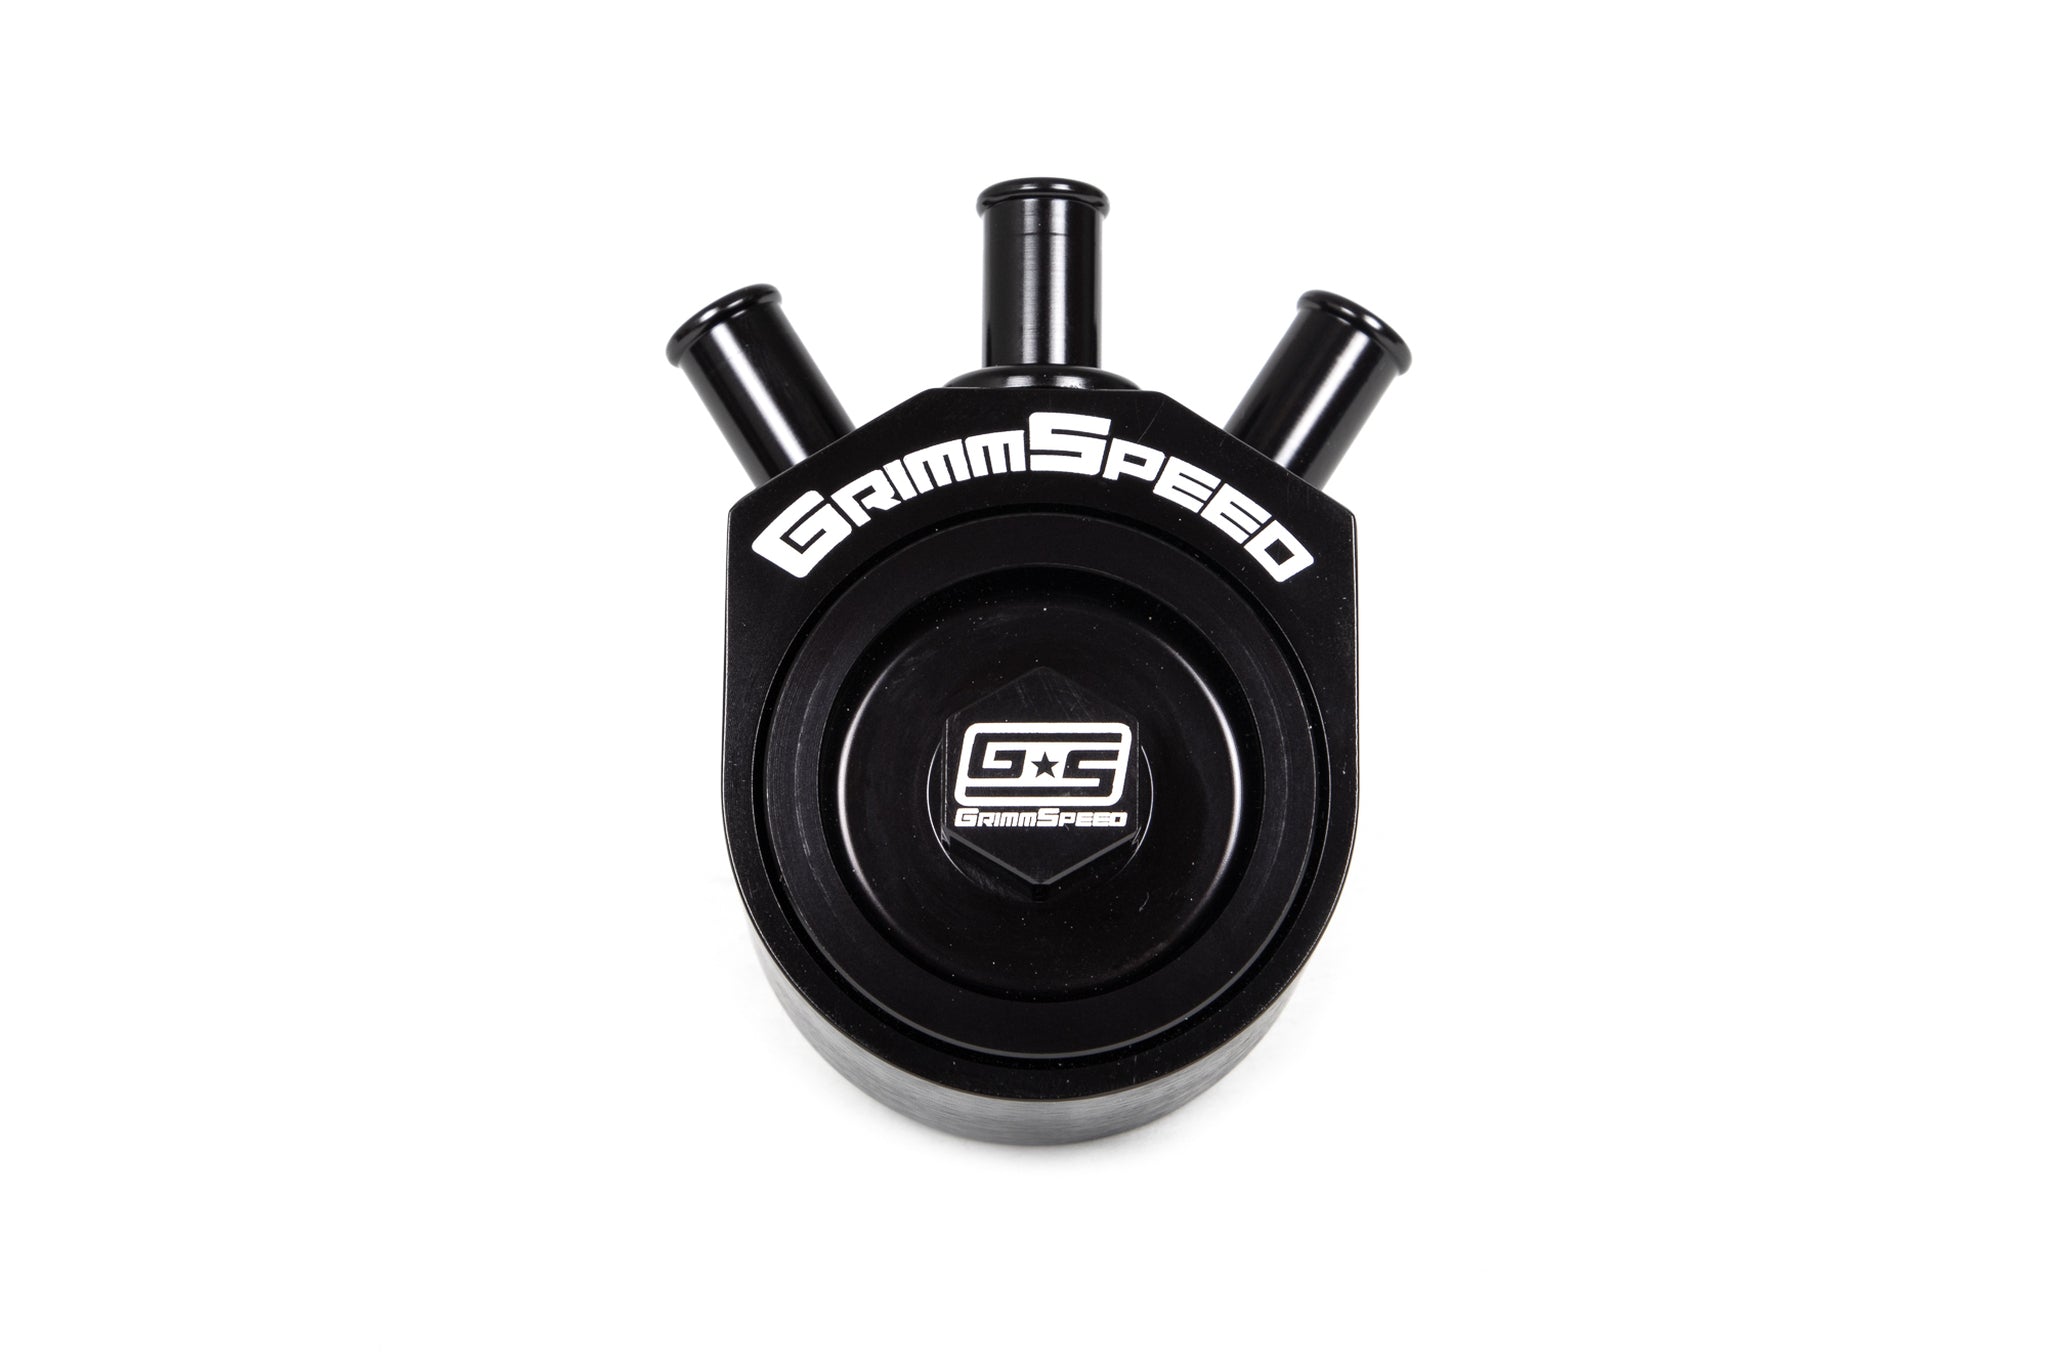 GrimmSpeed Air/Oil Separator (Multiple Subaru Fitments)